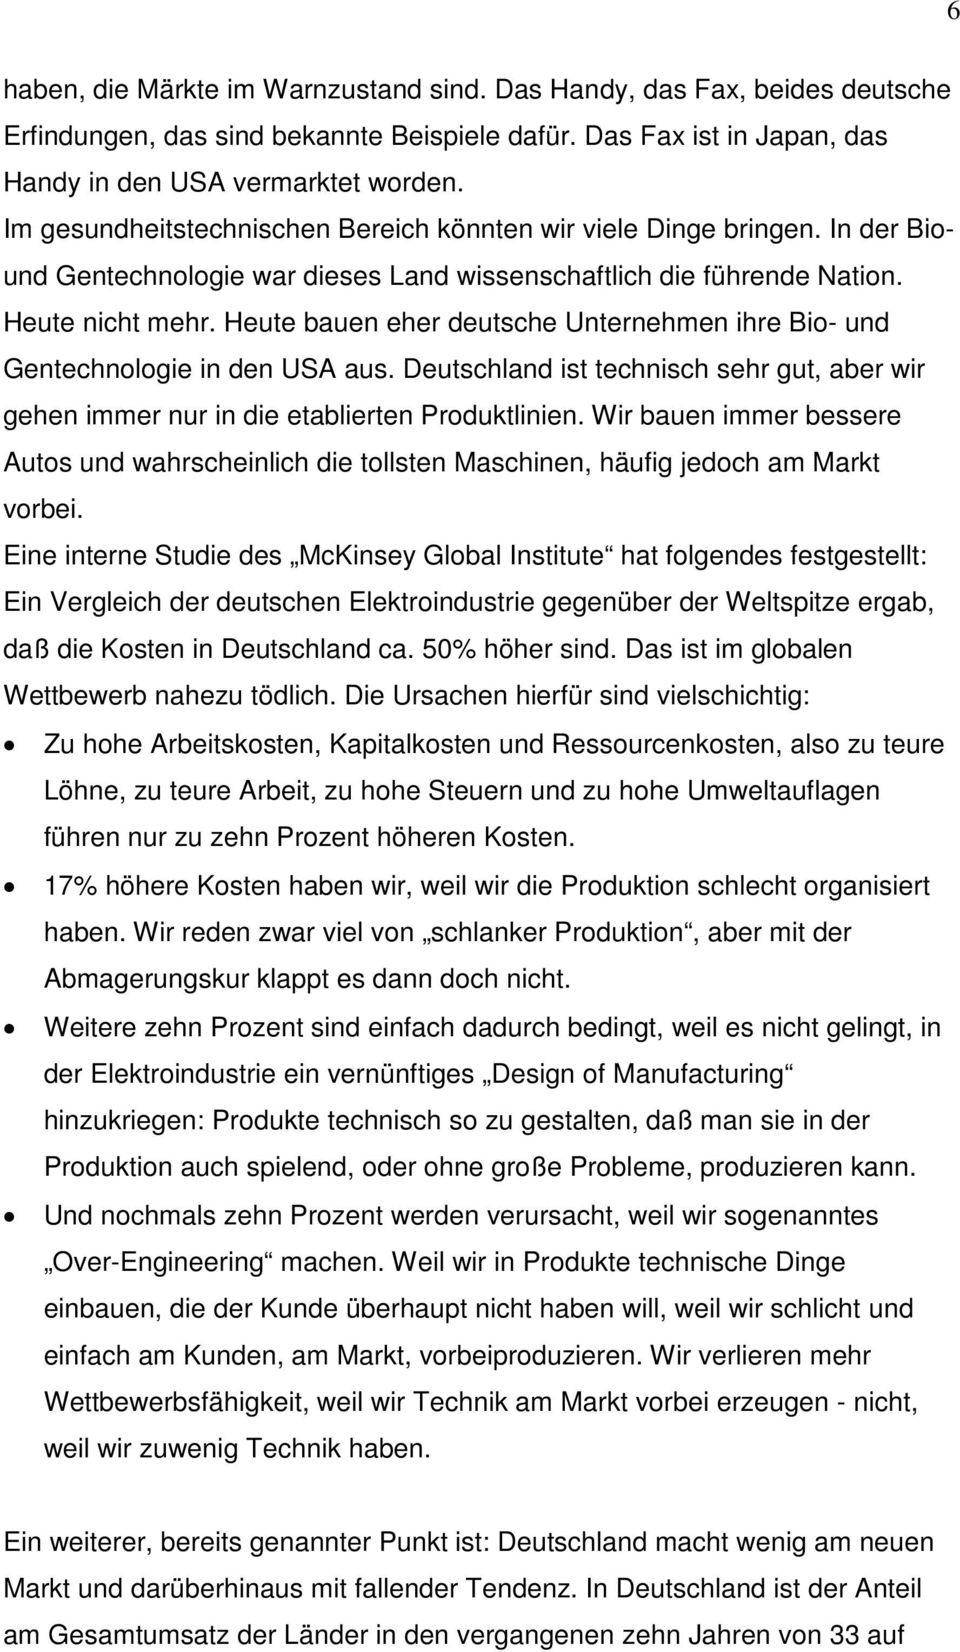 Heute bauen eher deutsche Unternehmen ihre Bio- und Gentechnologie in den USA aus. Deutschland ist technisch sehr gut, aber wir gehen immer nur in die etablierten Produktlinien.